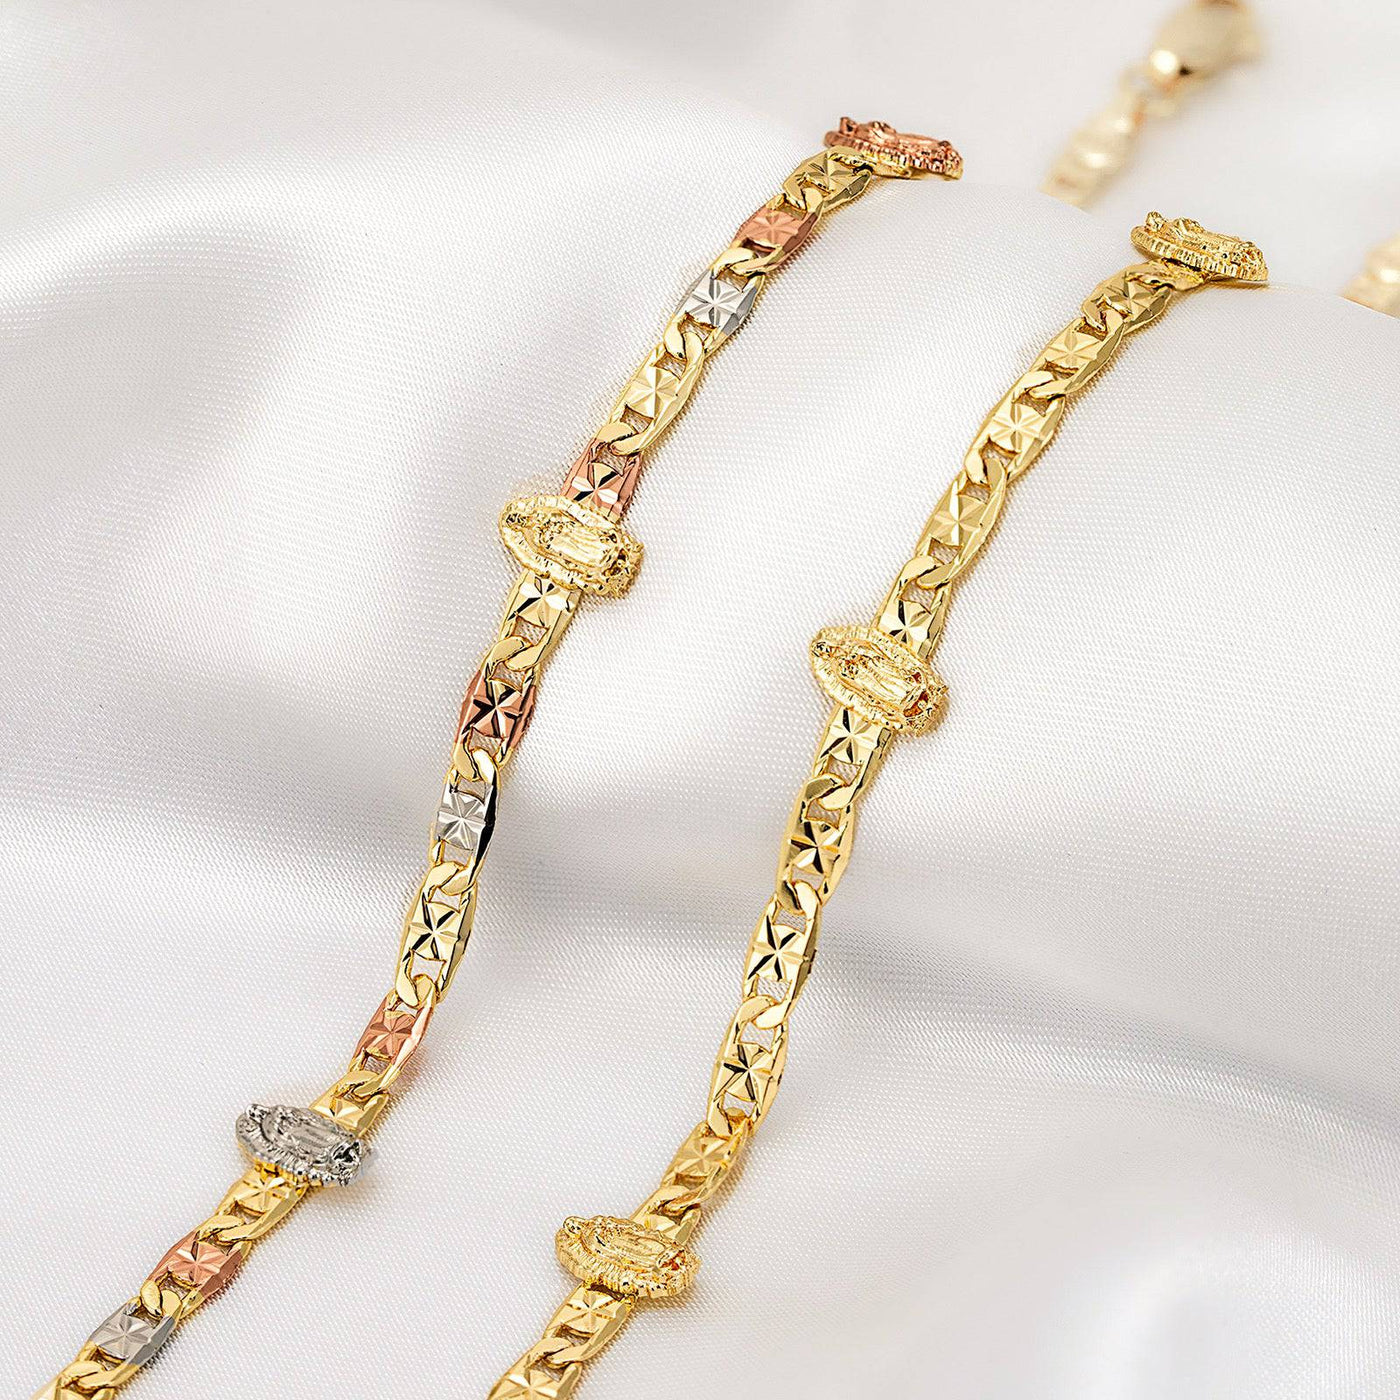 Virgen Mary Minimalist Bracelet 14K Gold Filled - Luxe & Co. Jewelry